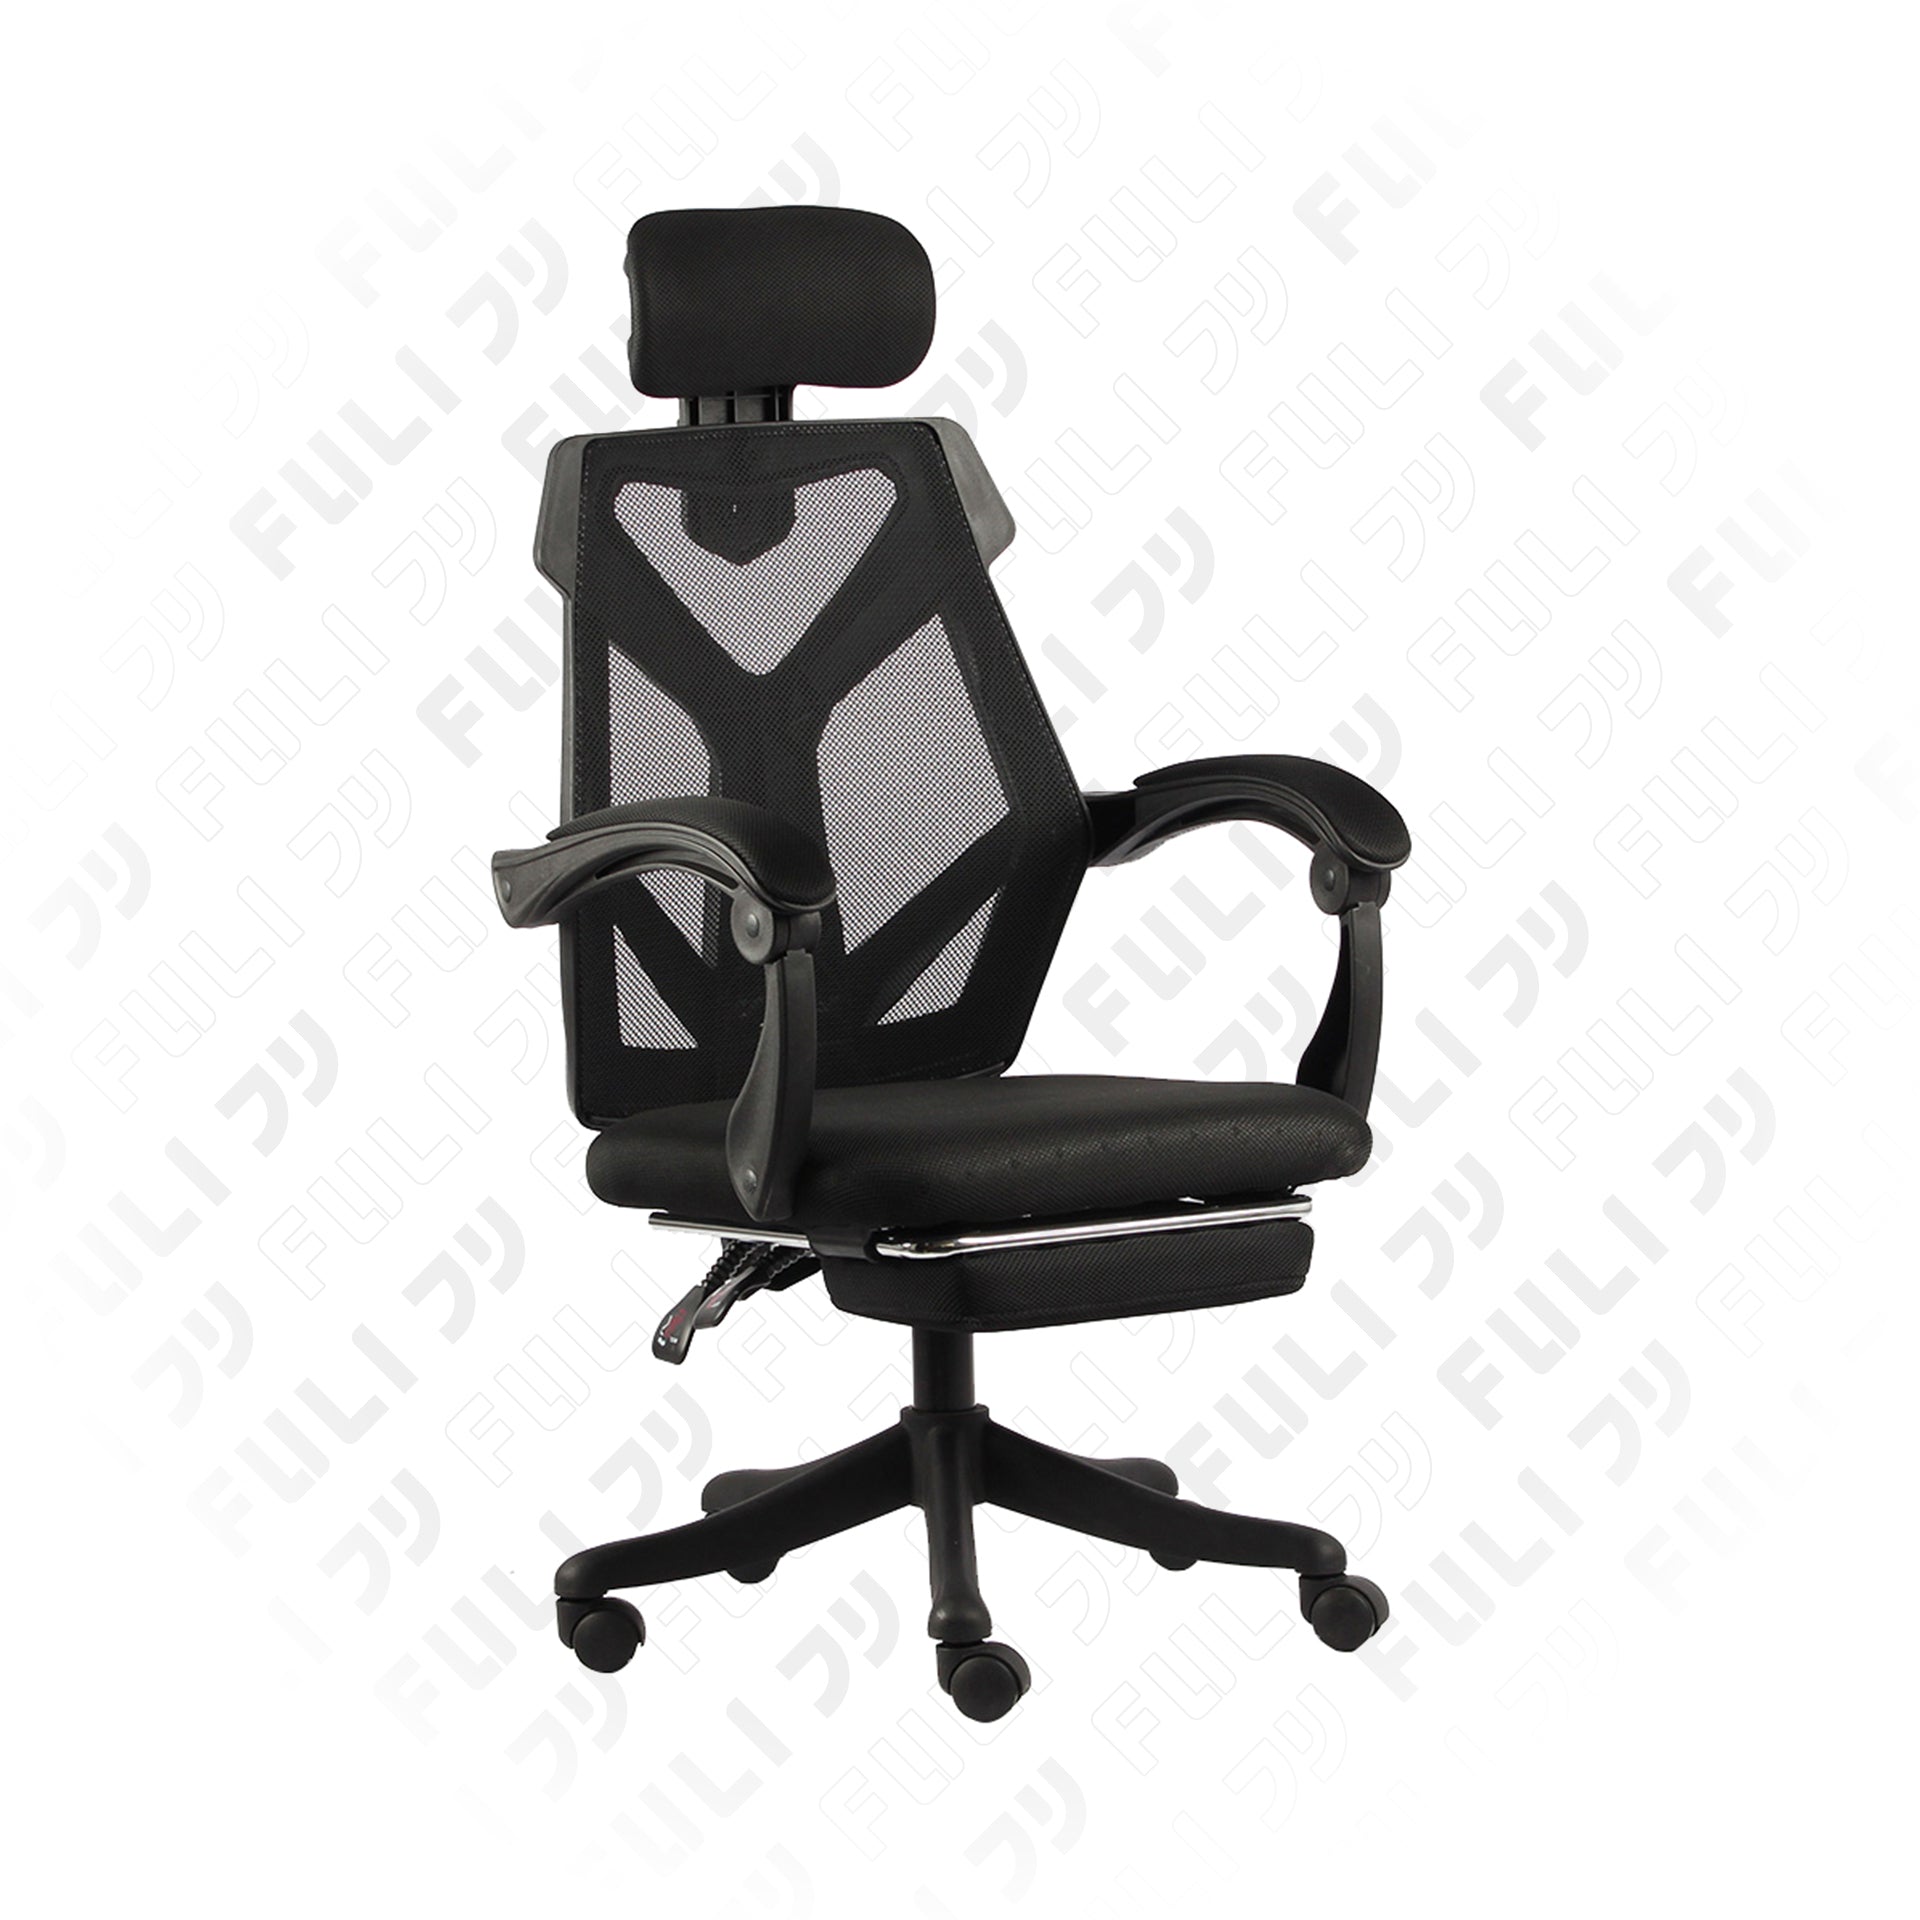 เก้าอี้สุขภาพ รุ่น X8 - สีดำ | FULI X8 ErgoChair - Black